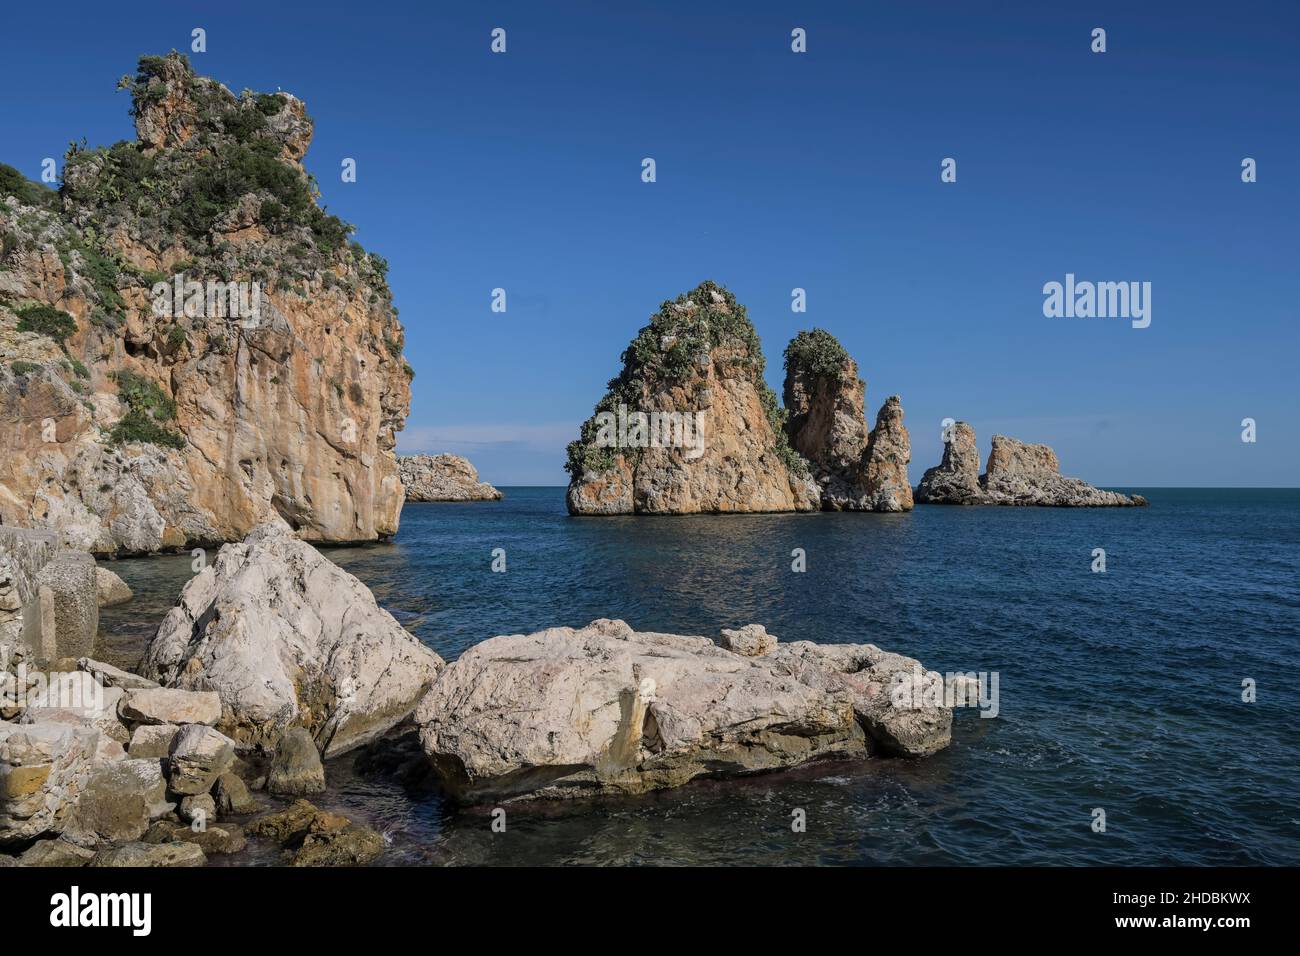 Felsen im Meer an der Tonnara di Scopello, Sizilien, Italien Banque D'Images